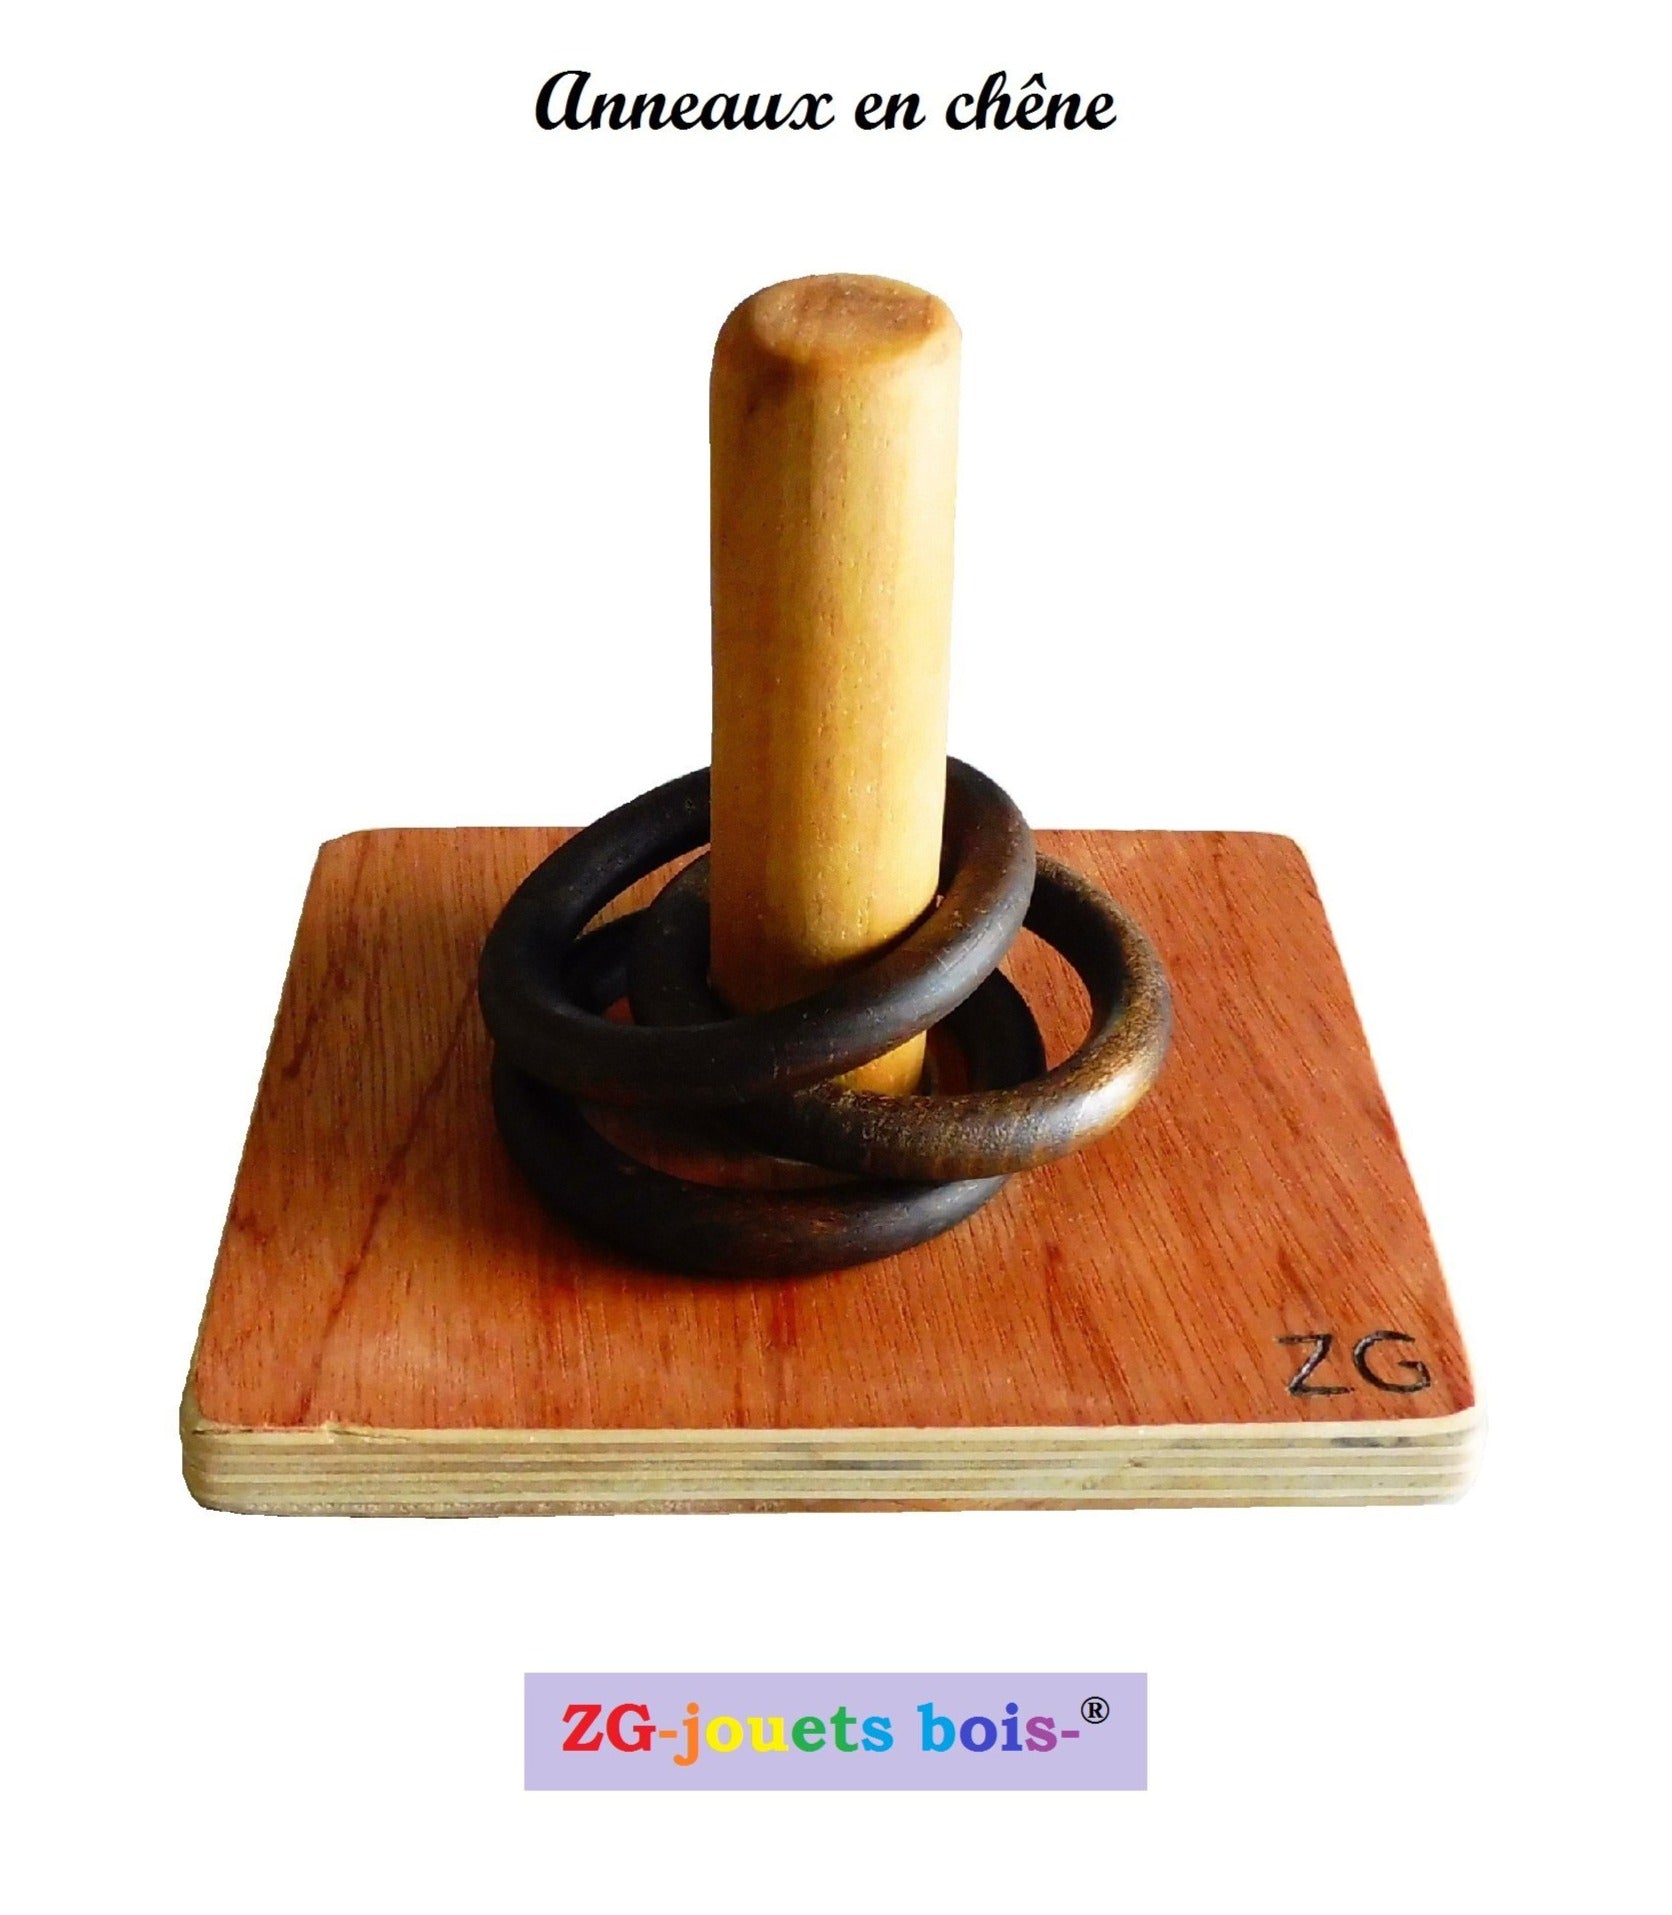 jeu premier âge nido montessori, empilage vertical anneaux en chêne, fabrication artisanale française ZG-jouetsbois- 